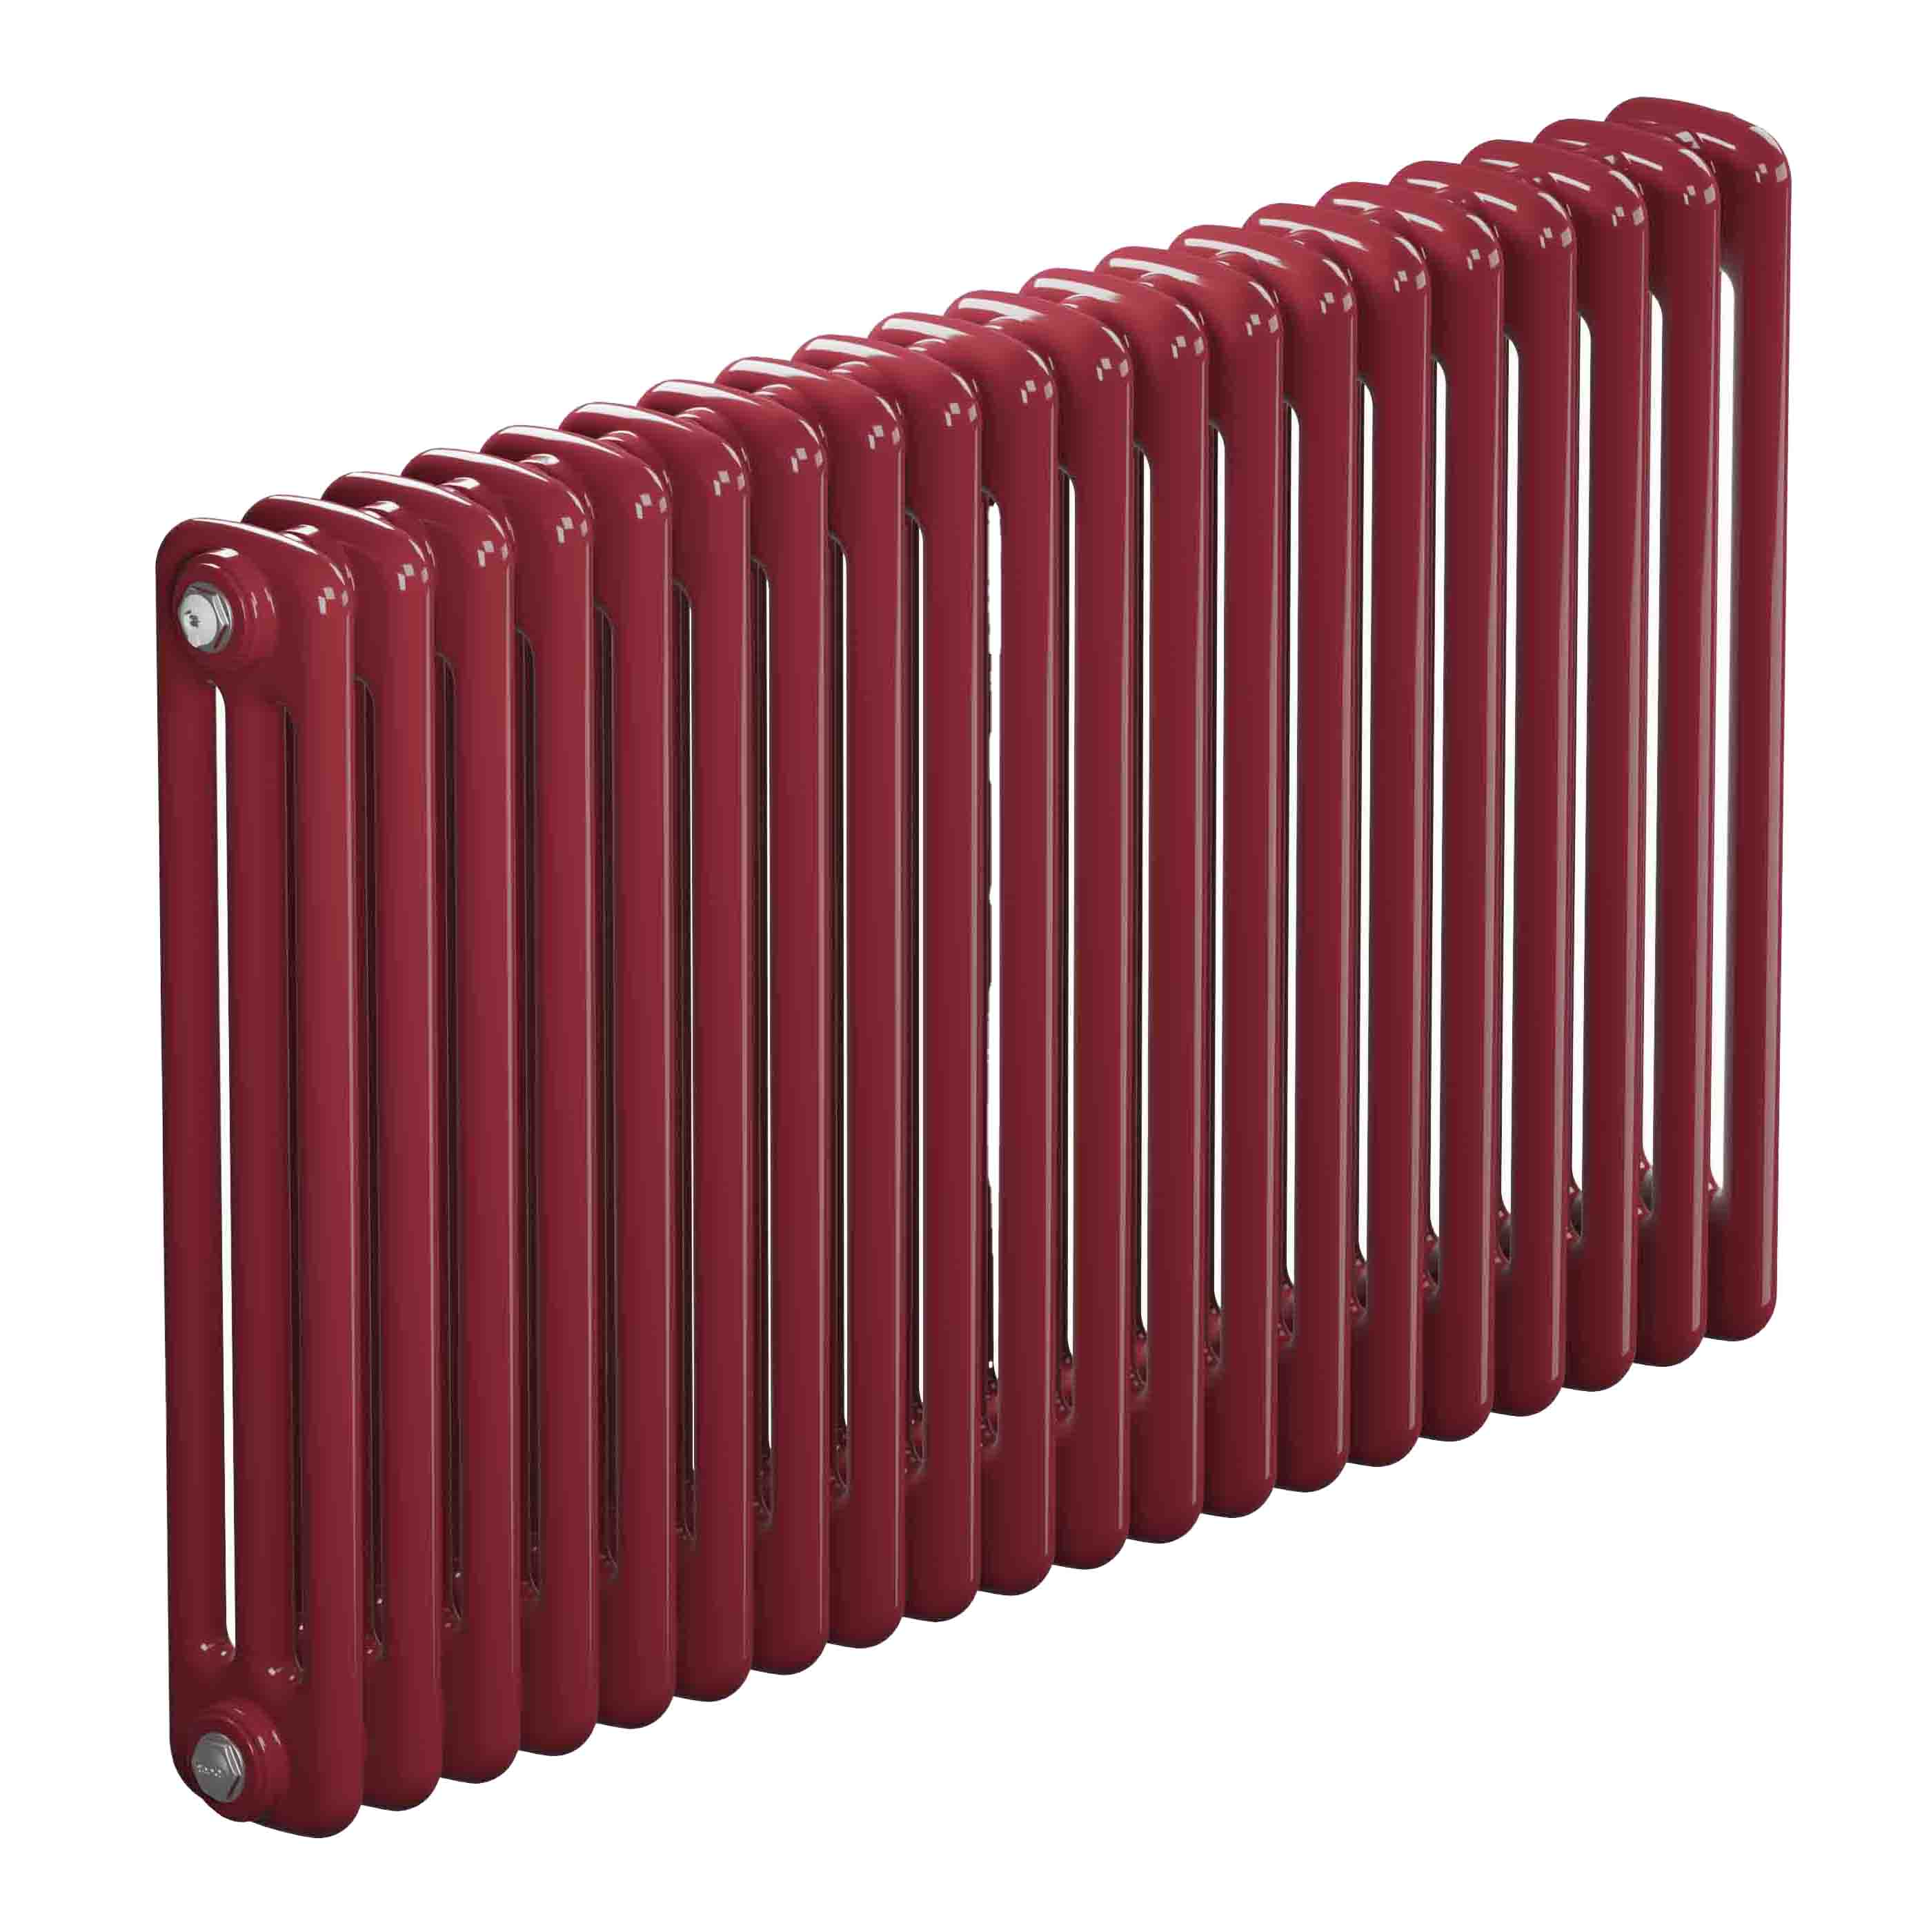 Трубчатый радиатор Rifar Tubog 3057, 22 секции, 3-колончатый, красно-коричневый (бордо), DV1